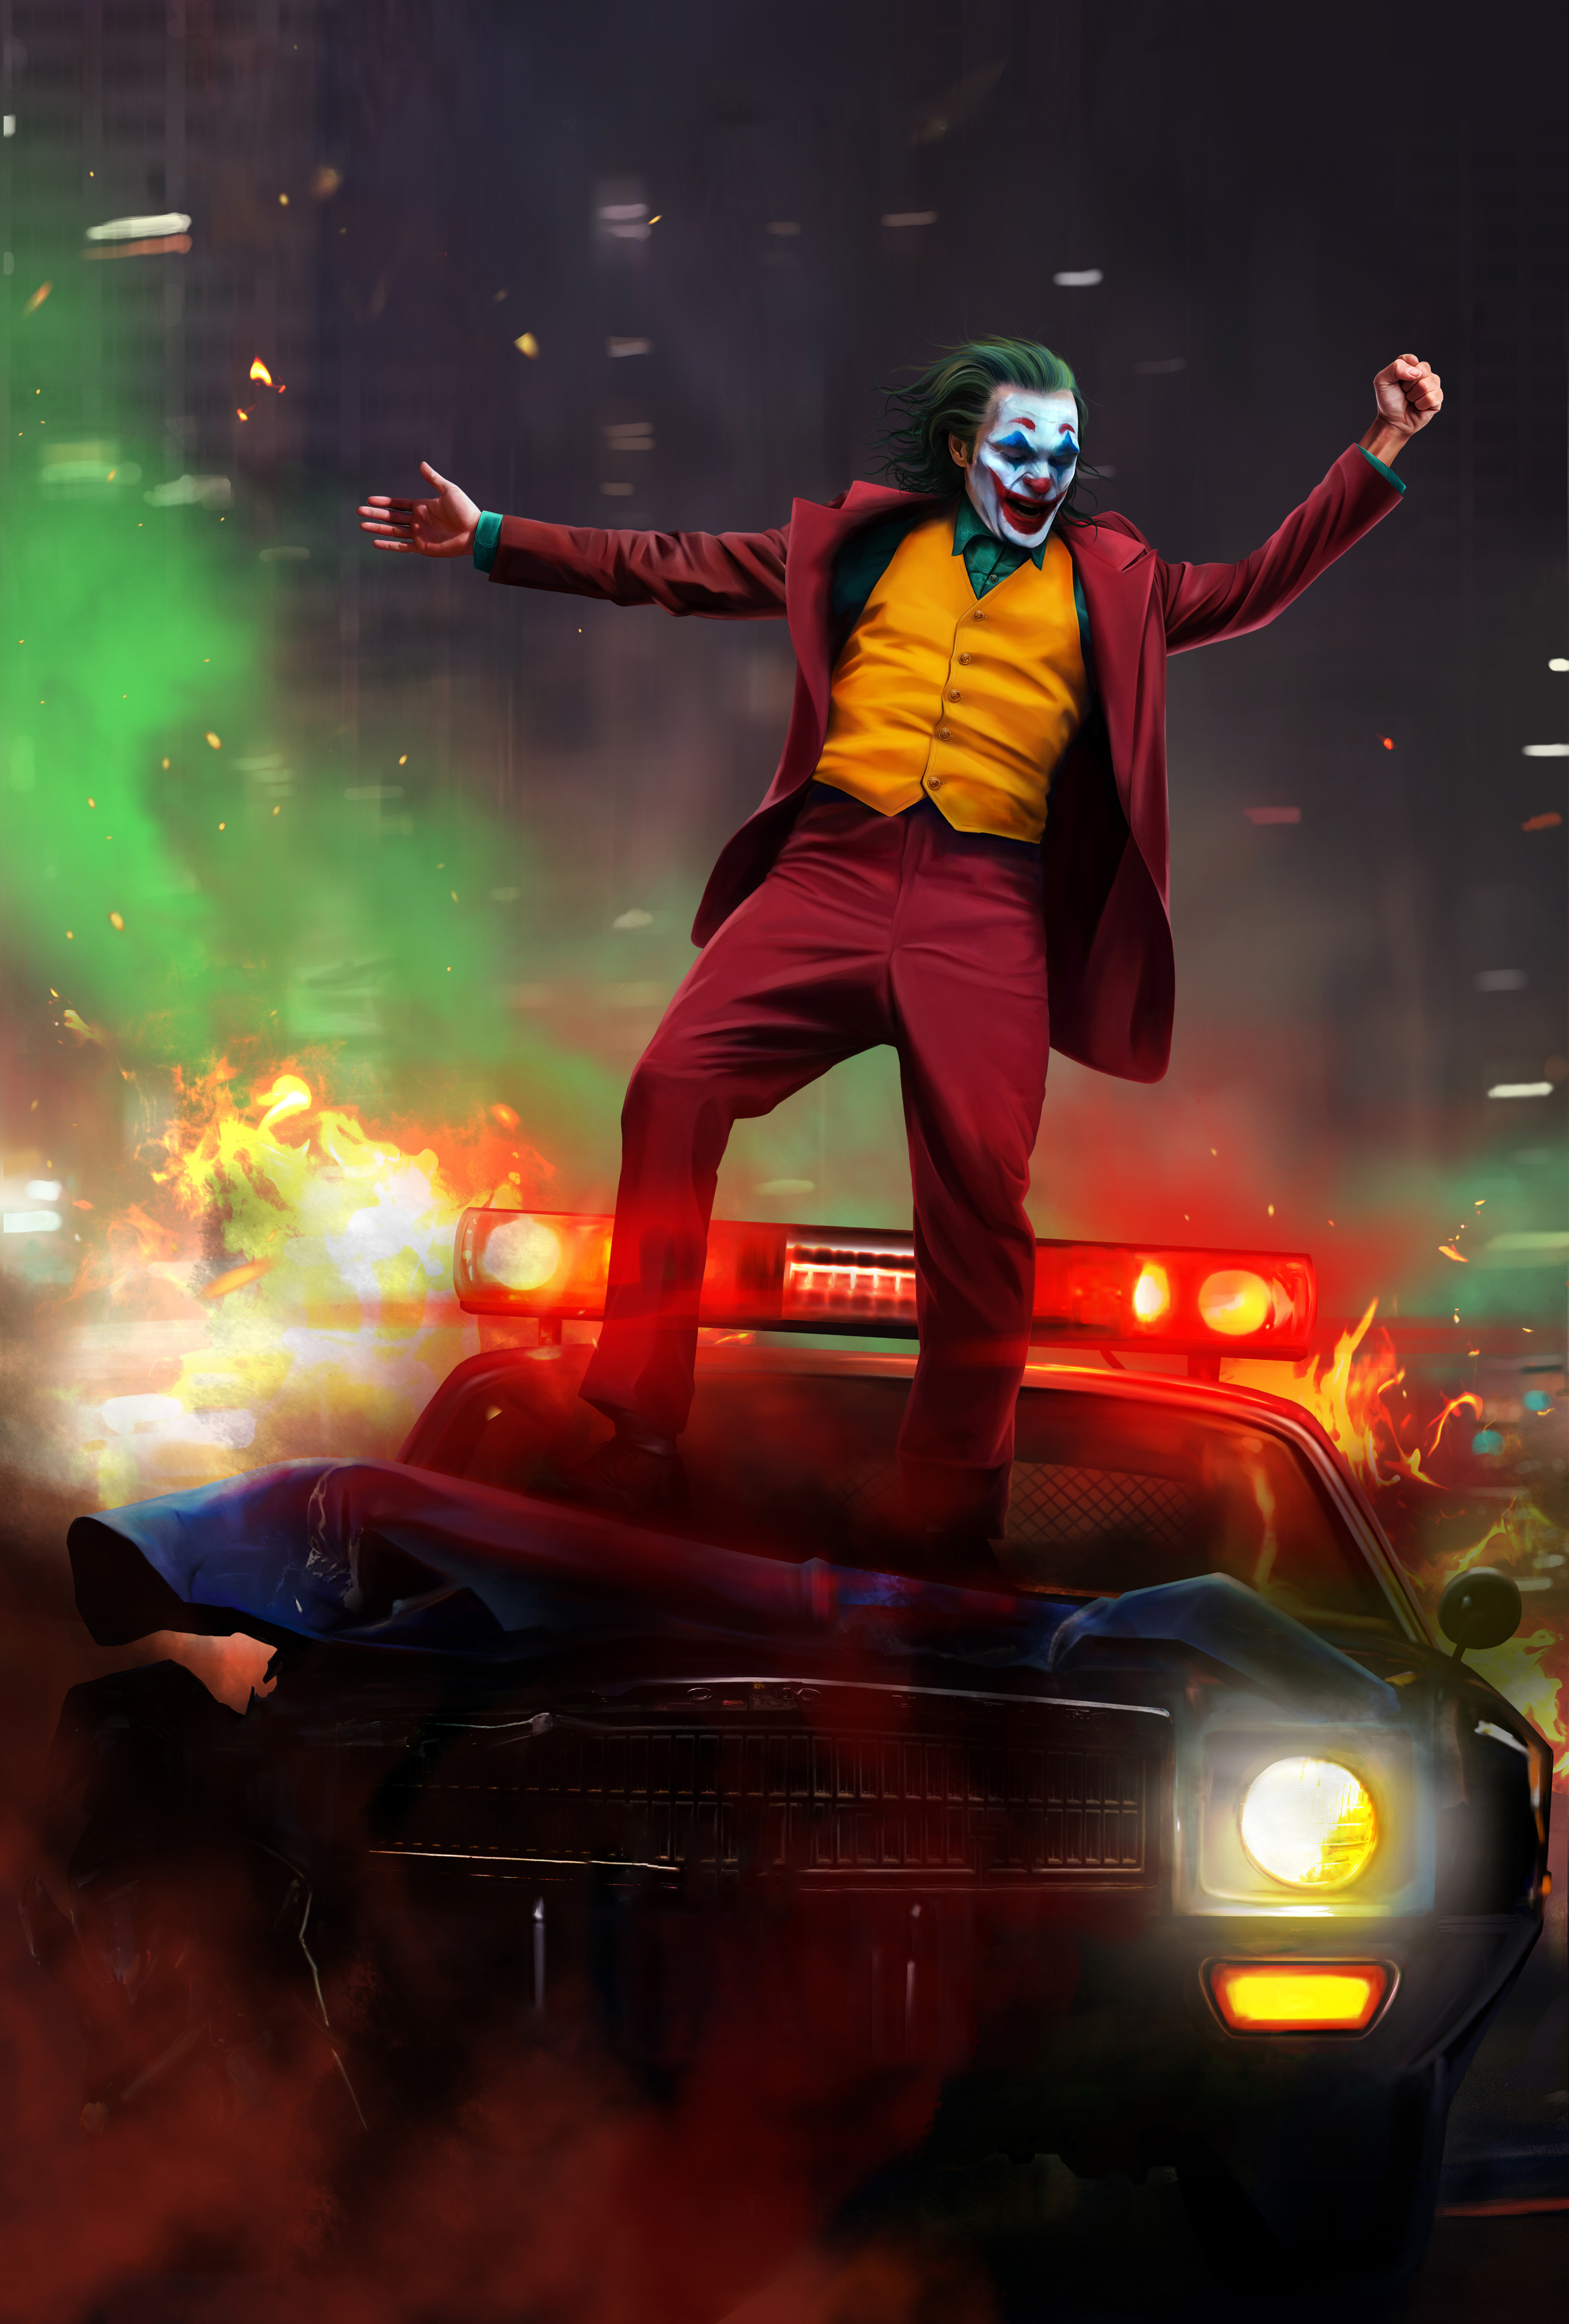 Joker download the new